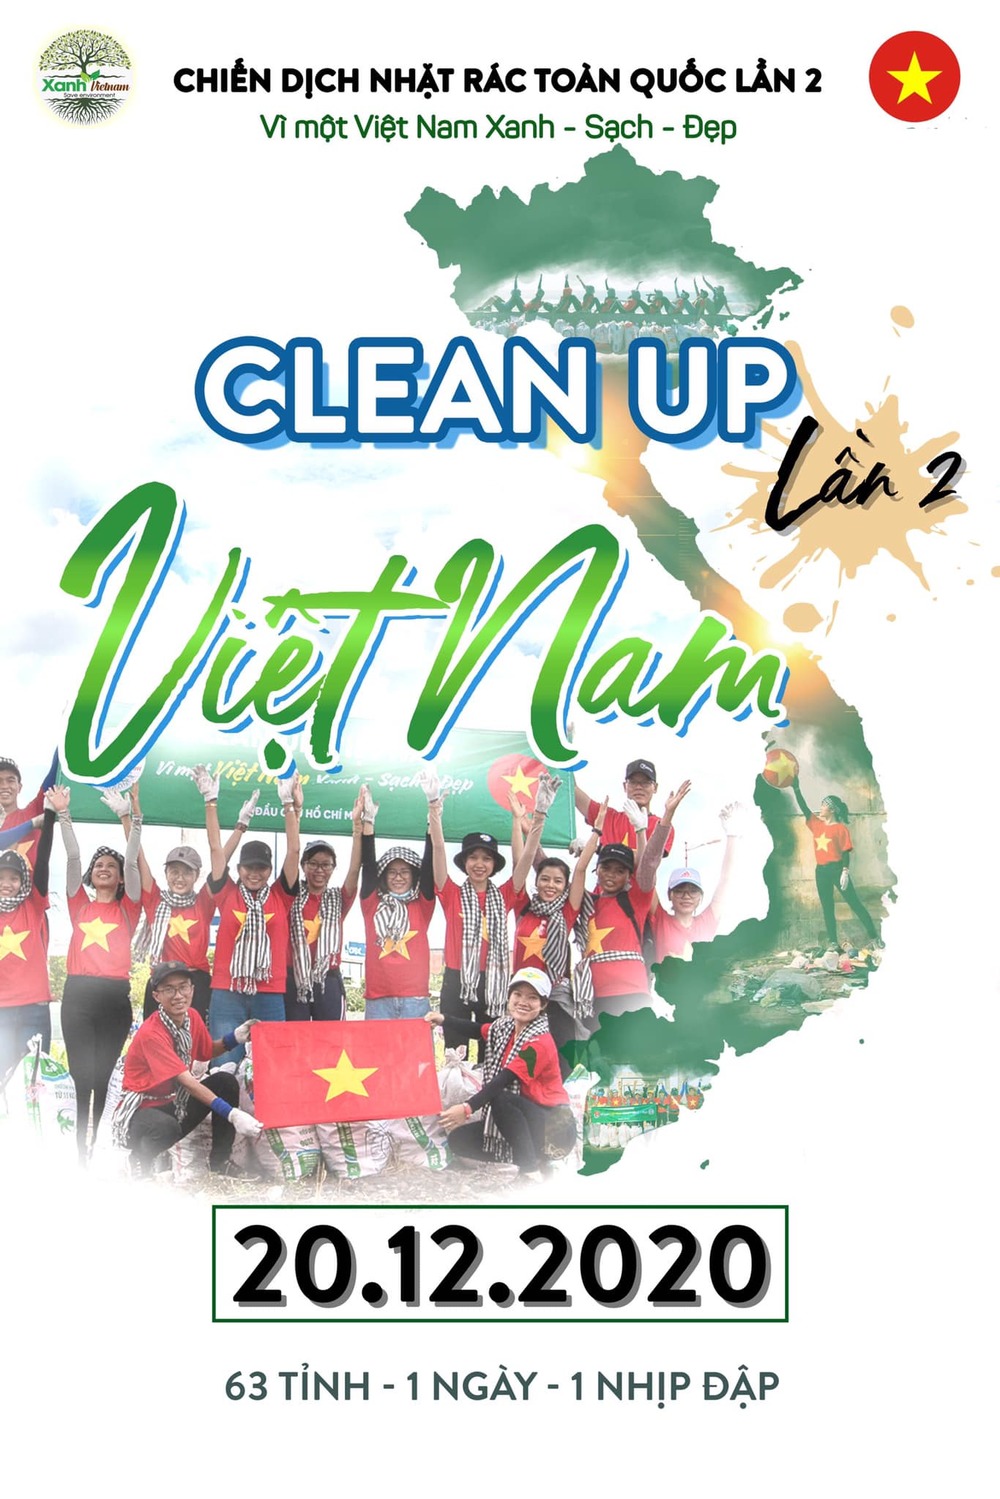  
Chiến dịch nhặt rác của Xanh Việt Nam trong vài ngày tới. (Ảnh: Group Xanh Việt Nam)